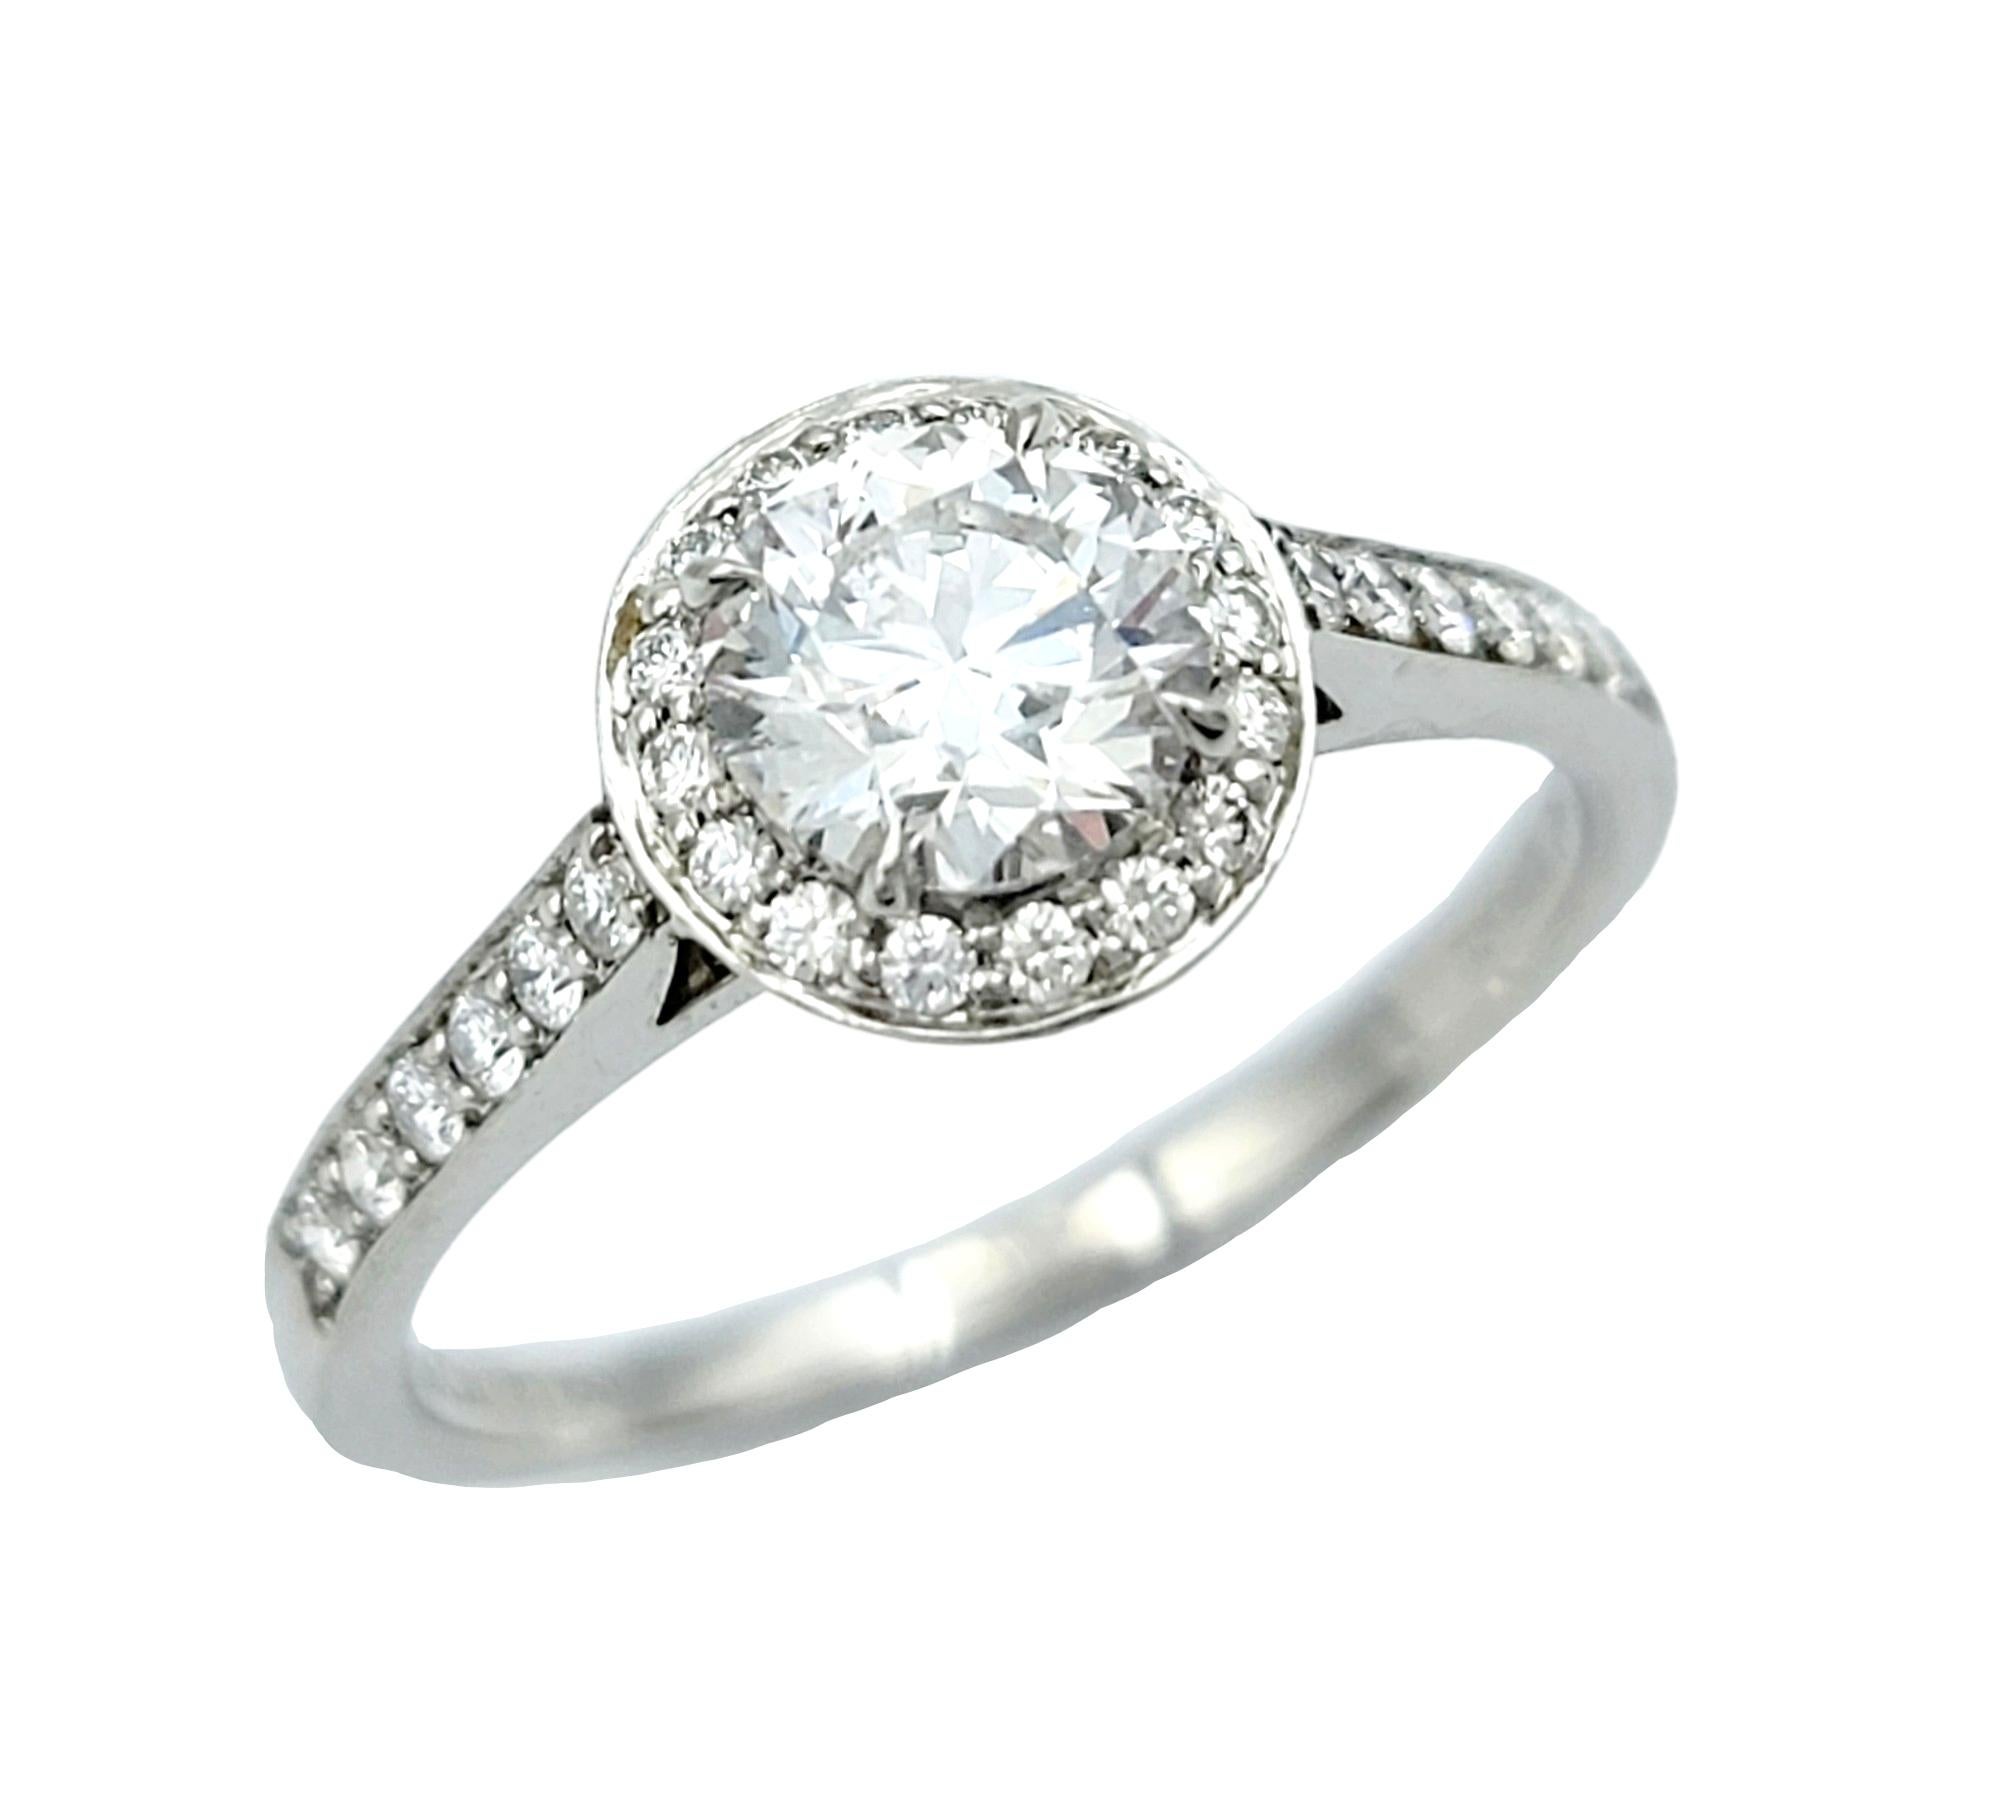 Ringgröße: 6

Atemberaubender Diamant-Halo-Verlobungsring des renommierten Juweliers Tiffany & Co. Der luxuriöse Legacy-Ring wird an ihrem Finger absolut strahlen. Der auffällige, rund geschliffene Mittelstein wird von einem glitzernden Halo aus